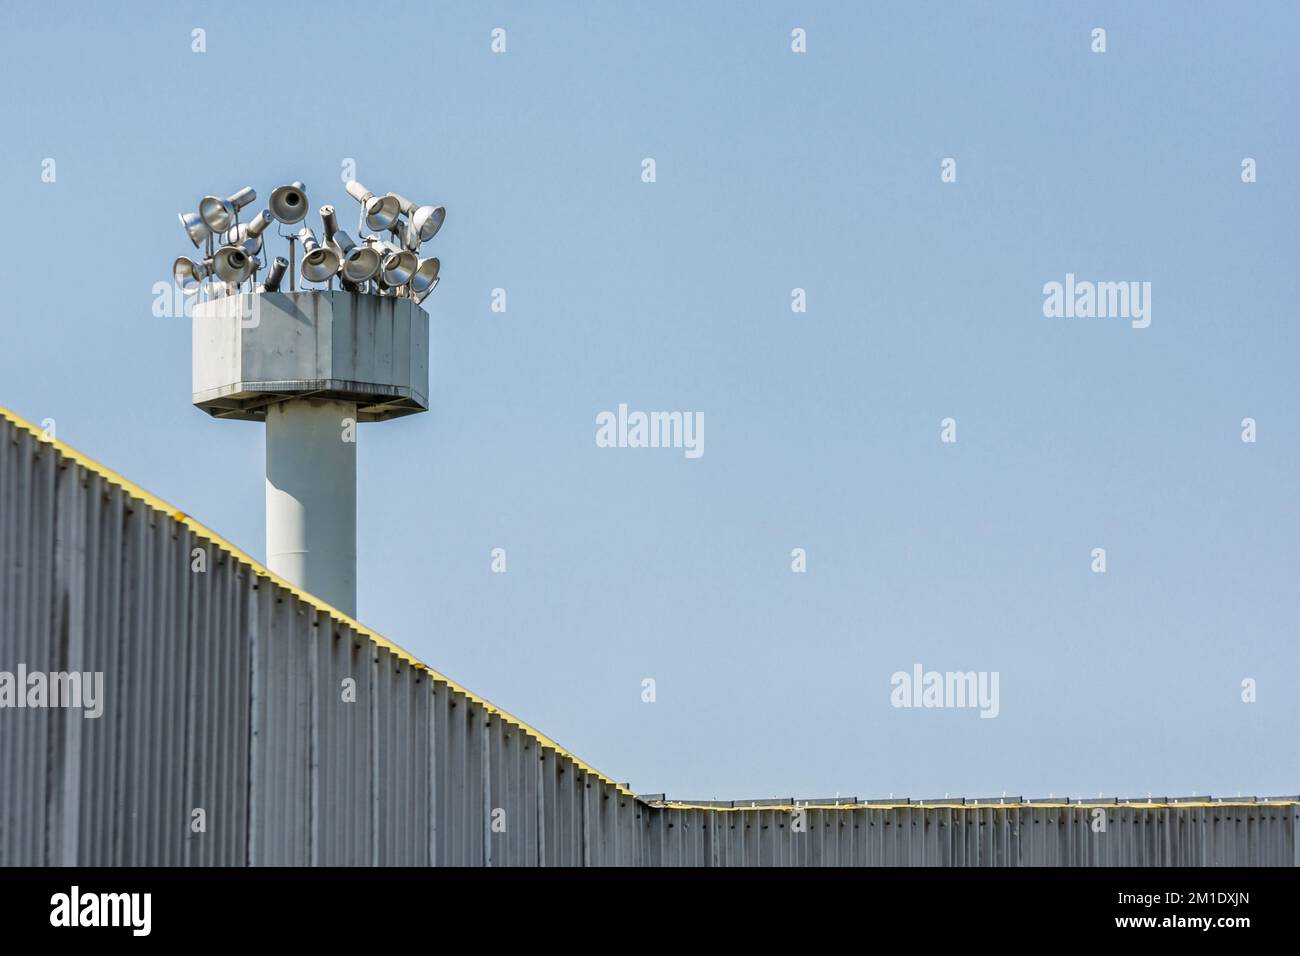 Hohe Wände mit Suchscheinwerfern als Symbol für Grenzen und Gefängnisse Stockfoto